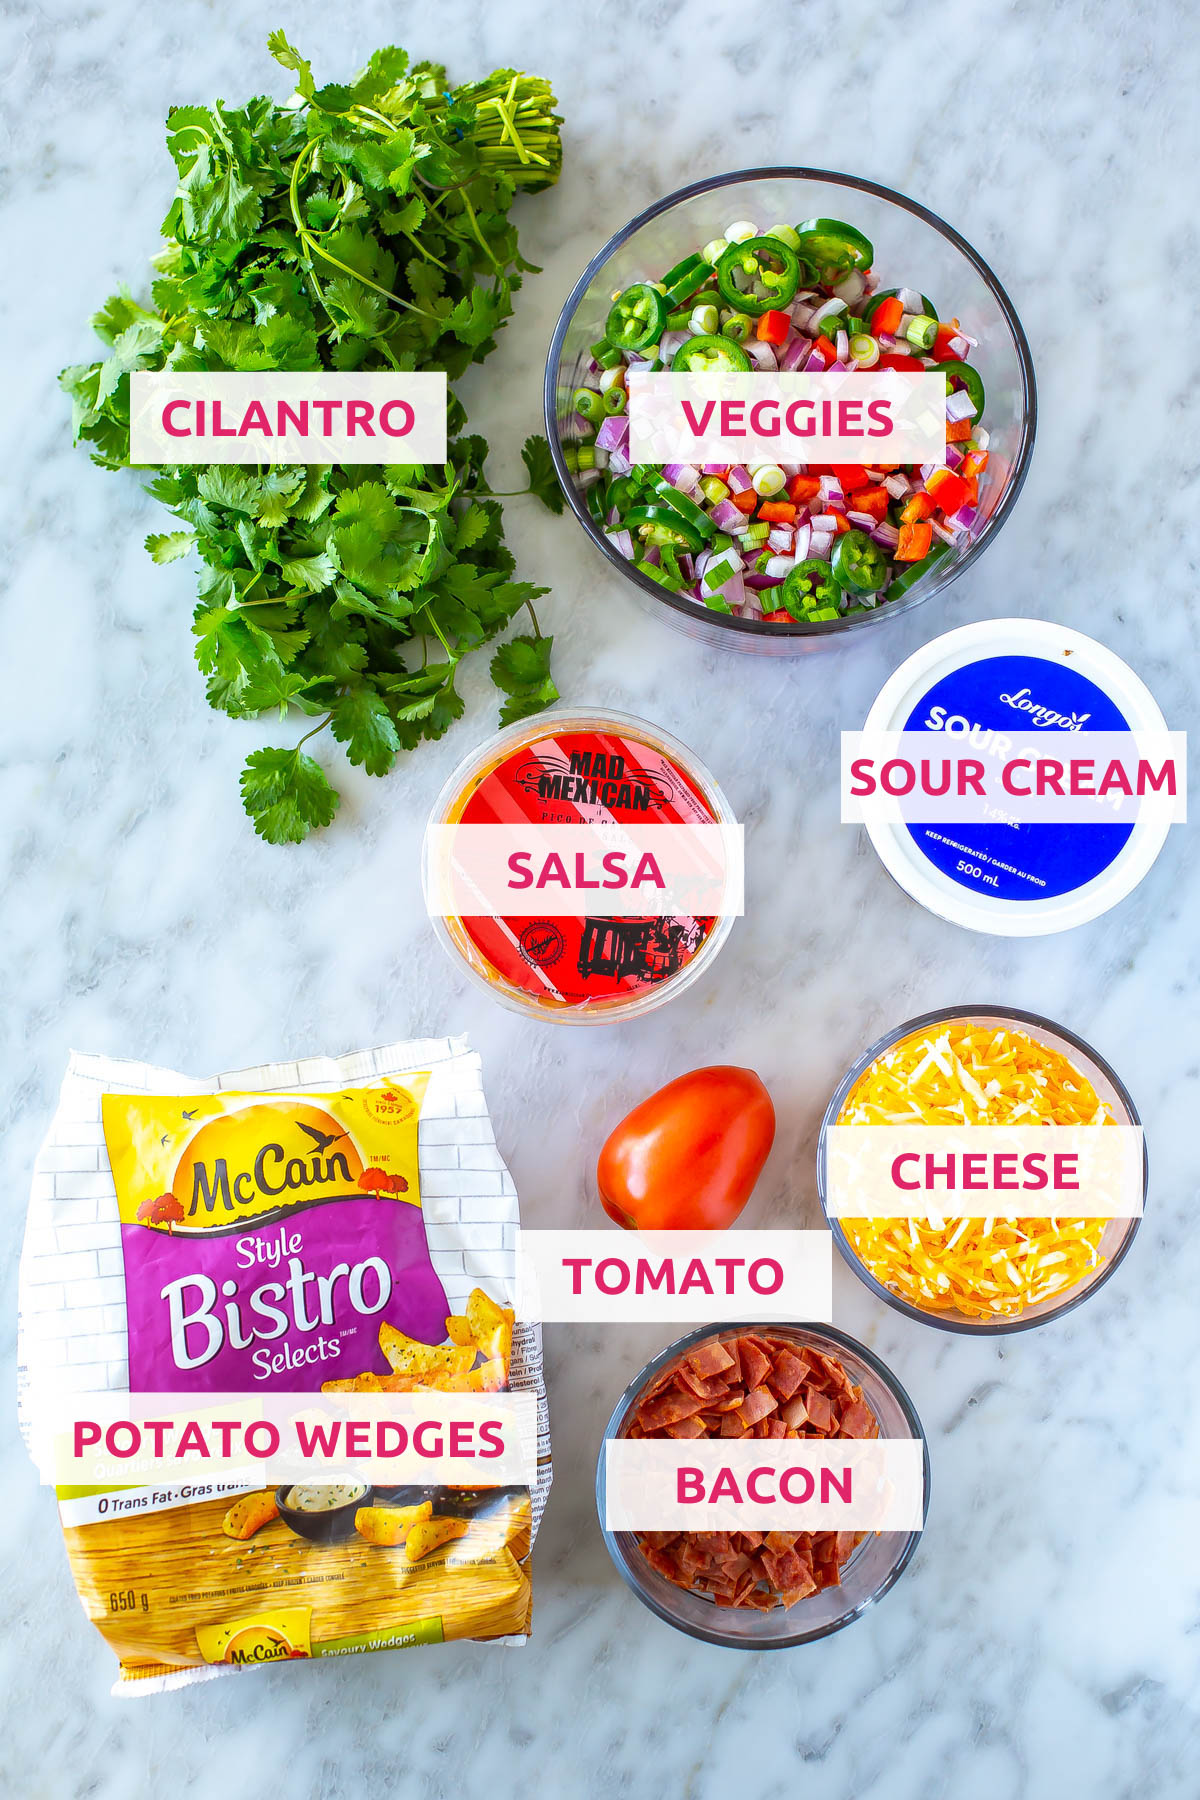 Ingredients for Irish nachos: potato wedges, turkey, tomato, cheese, sour cream, salsa, cilantro, and veggies.